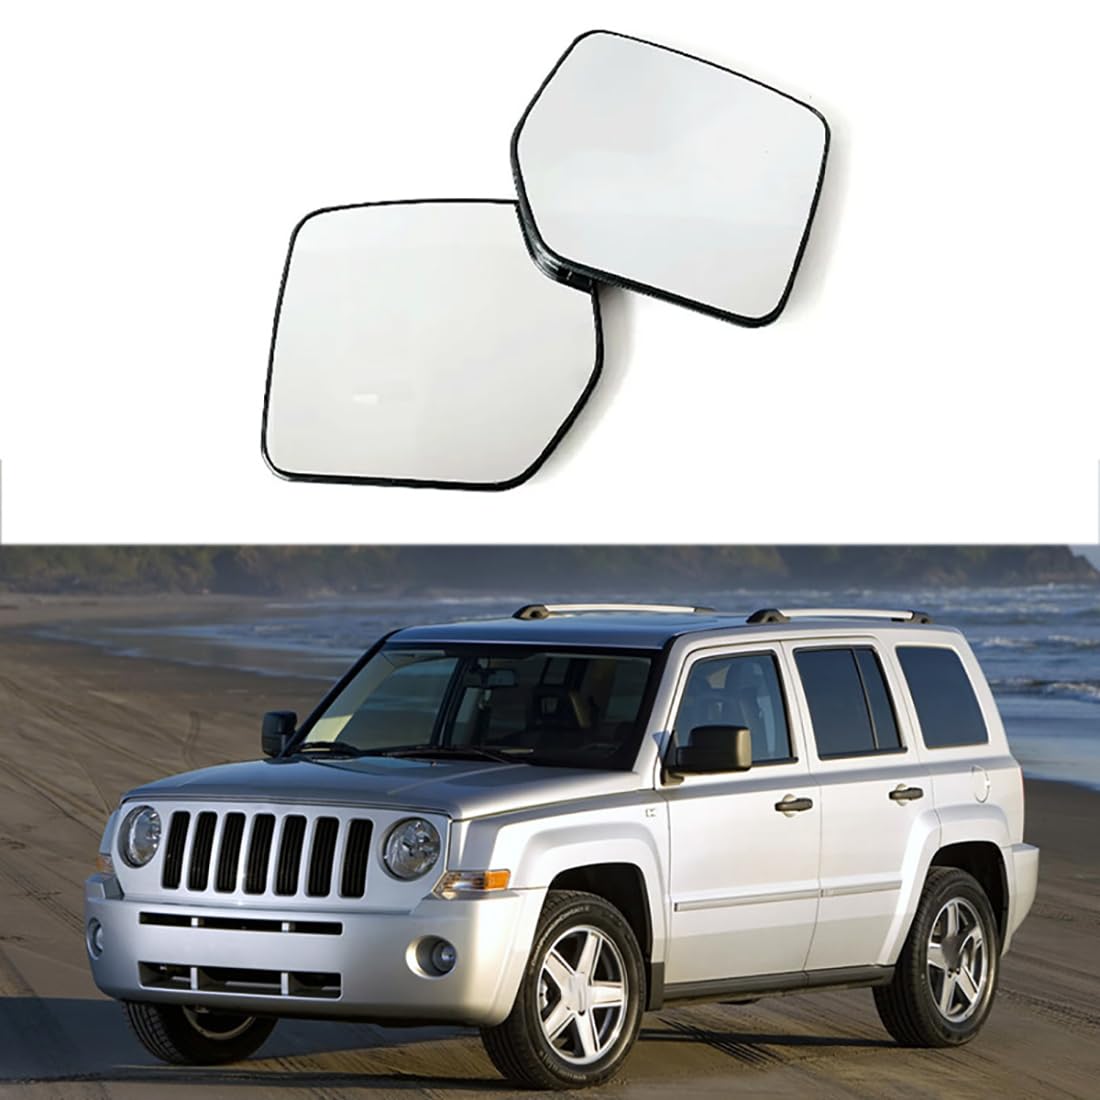 Austauschbarer Auto-Außenspiegel aus Beheizbarem Glas für Jeep Liberty 2008-2012,beheizbarer Rückspiegel für Fahrer und Beifahrer Links/rechts,C-right and left von YujieNB